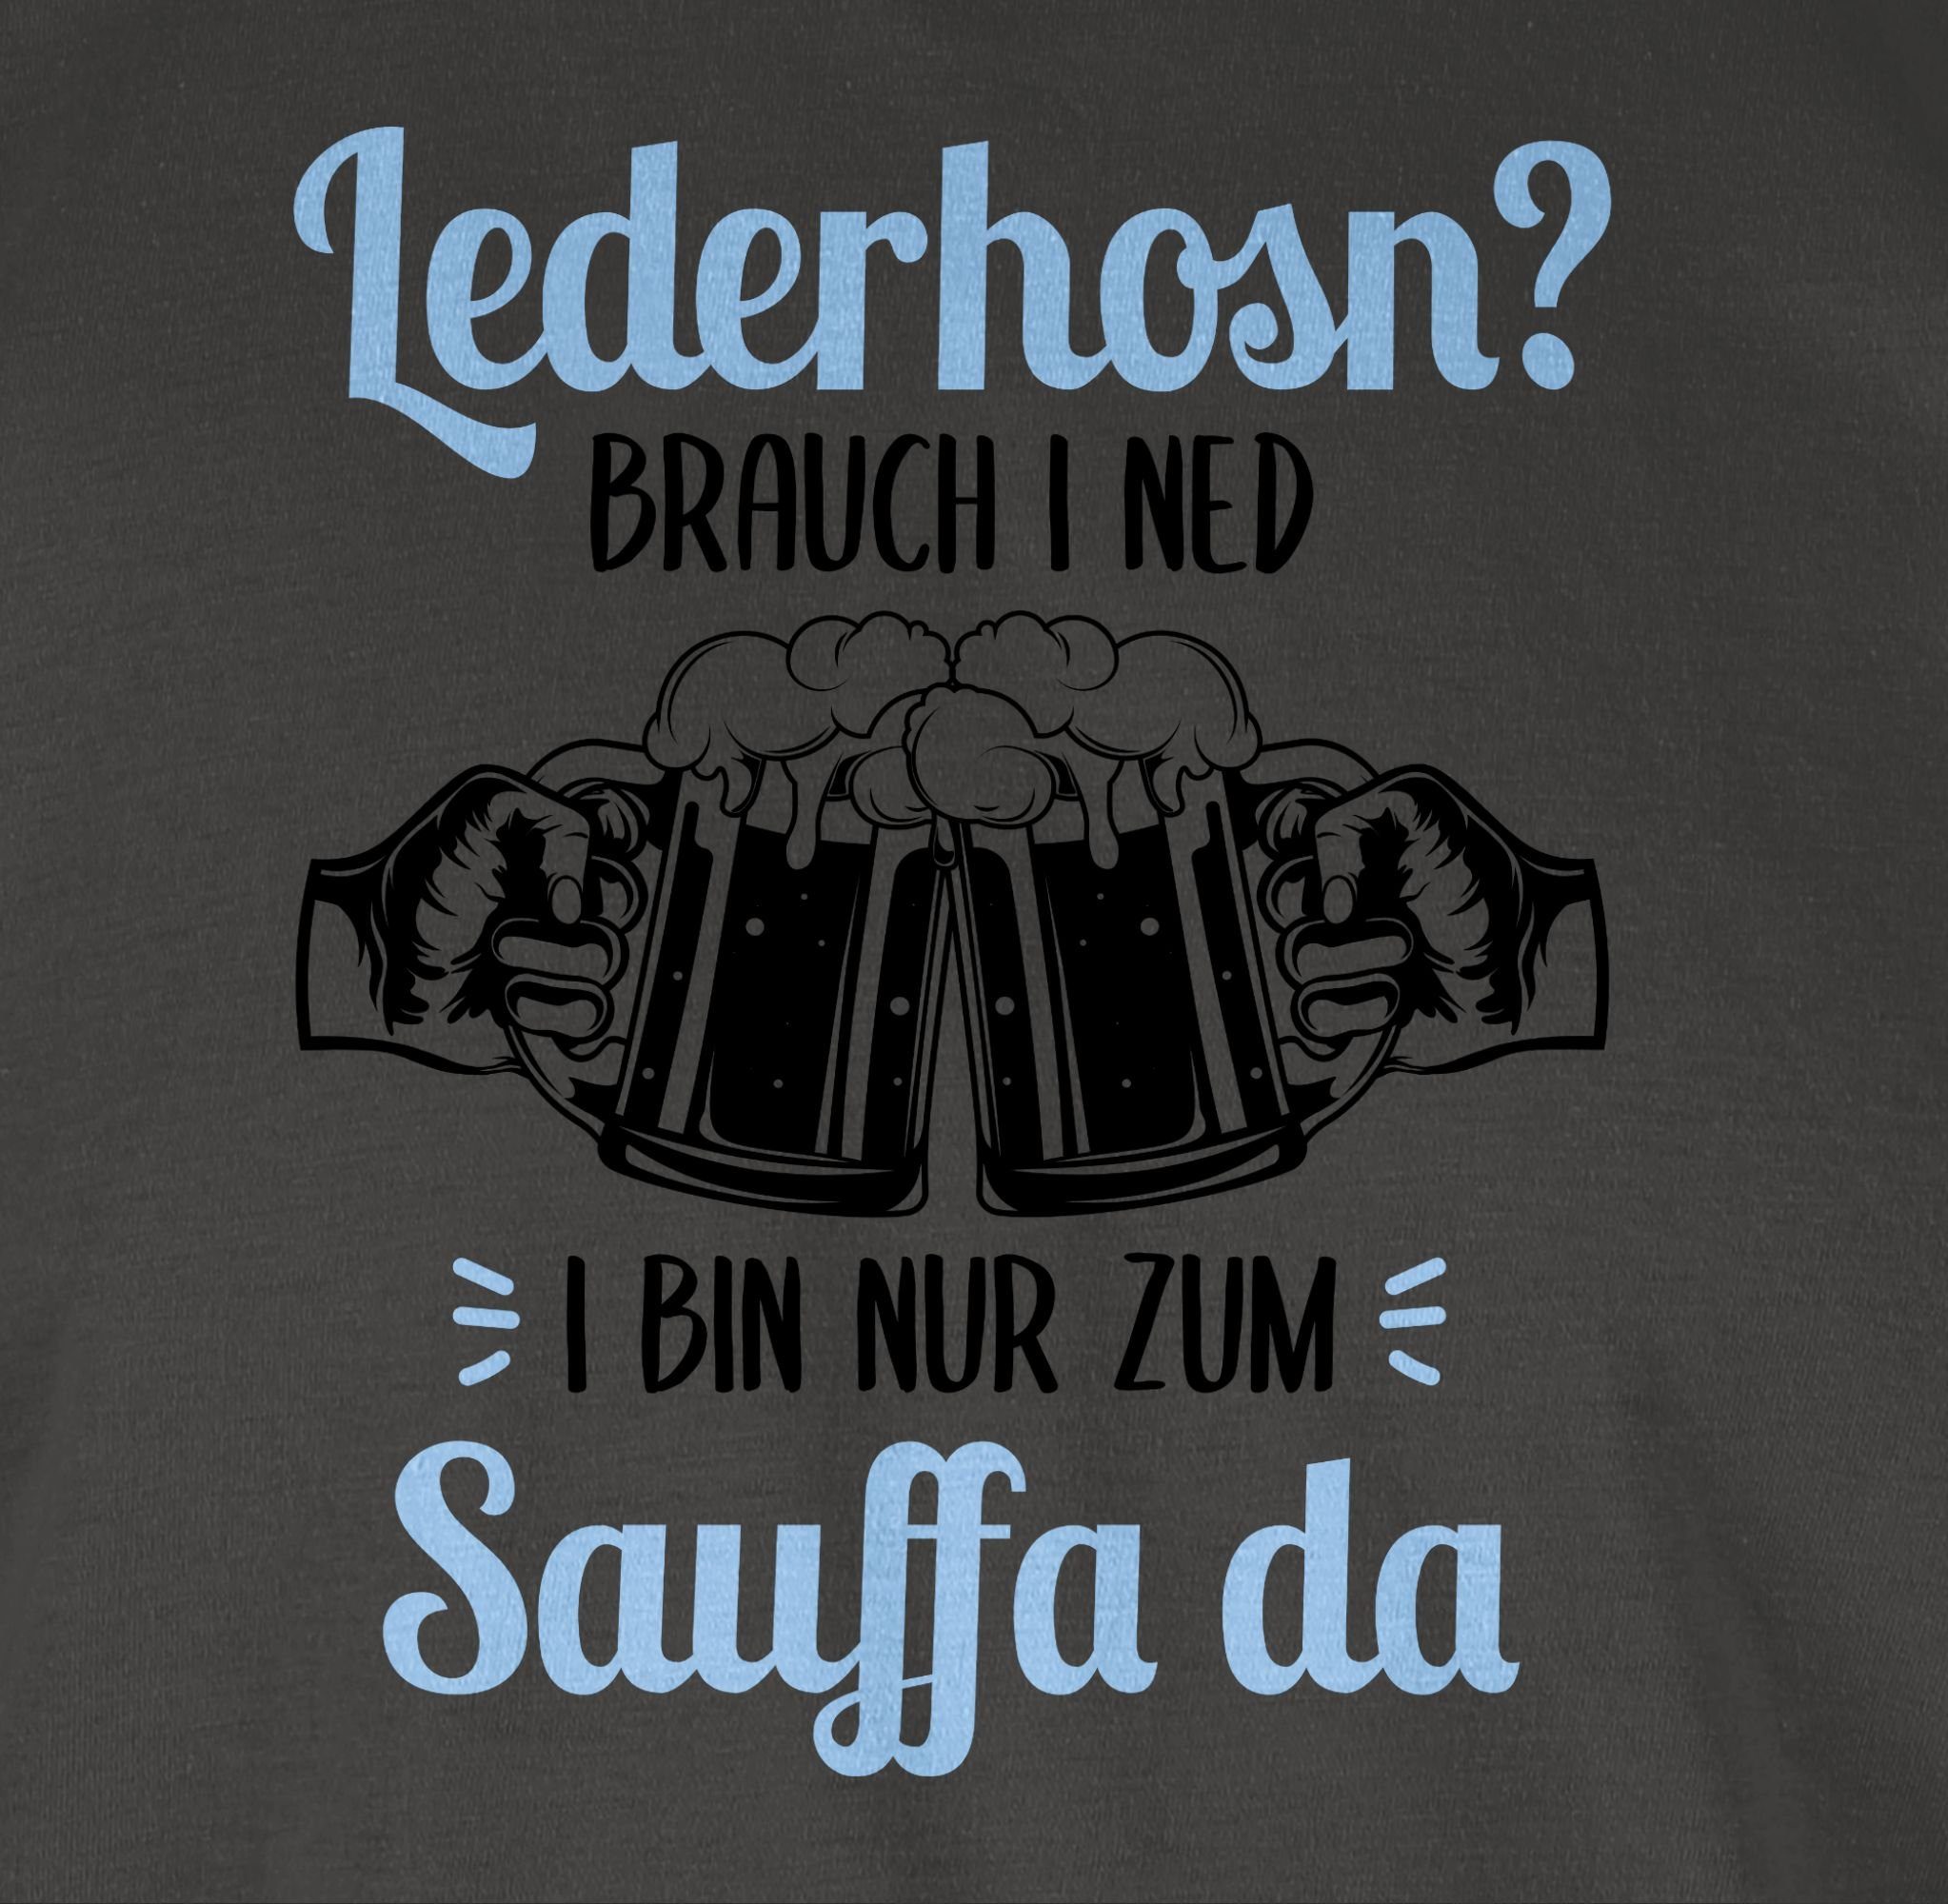 Shirtracer T-Shirt i Sauffa Bin Brauch da Dunkelgrau zum nur 1 Oktoberfest für Mode Lederhosn? Herren ned